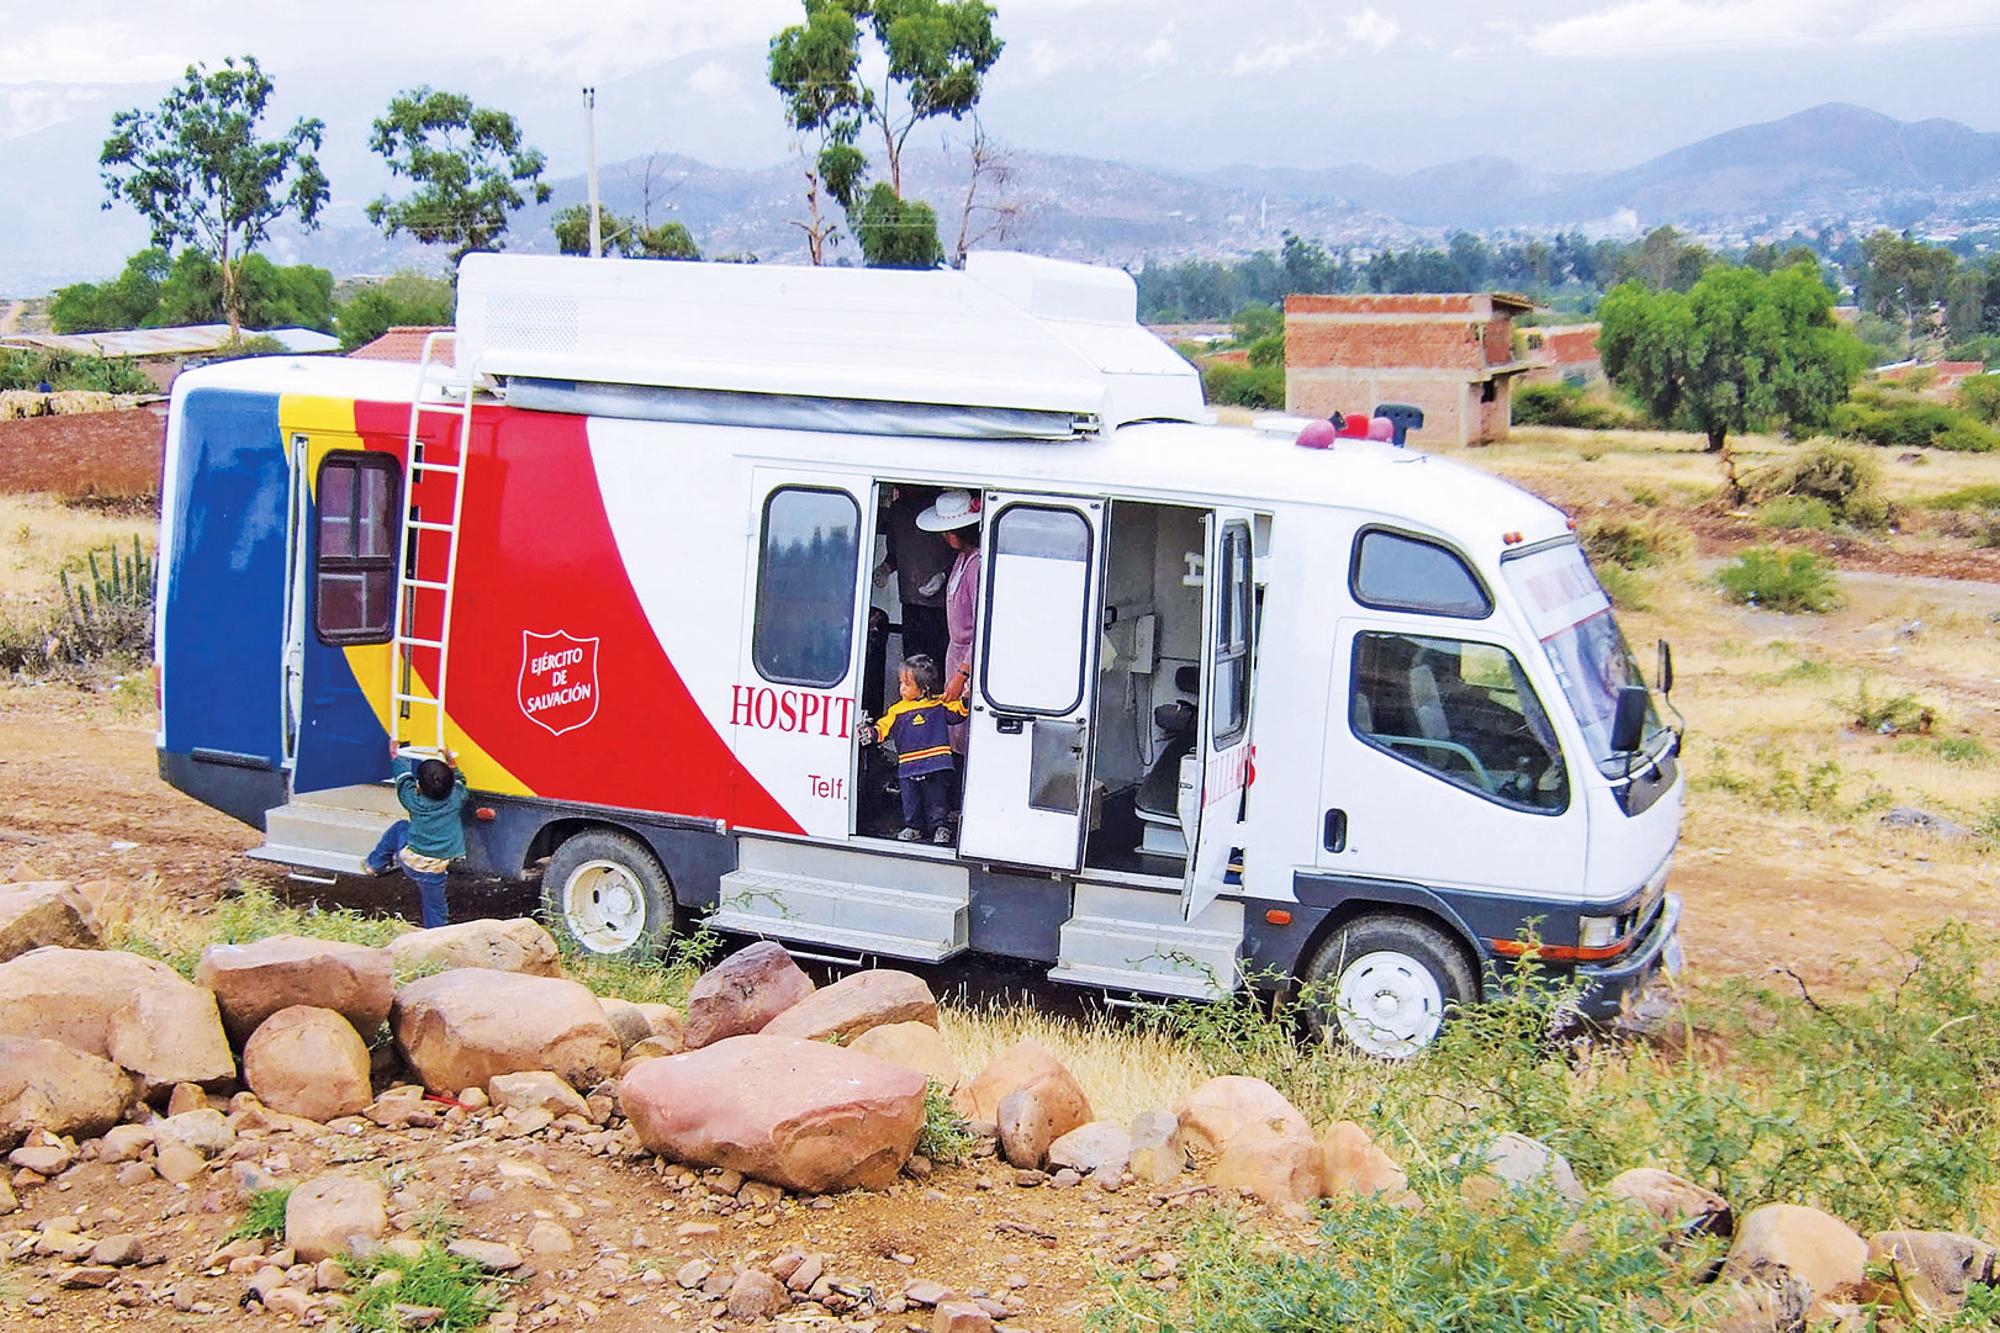 En buss som fungerar som en mobil klinik ute på landsbygden i Bolivia